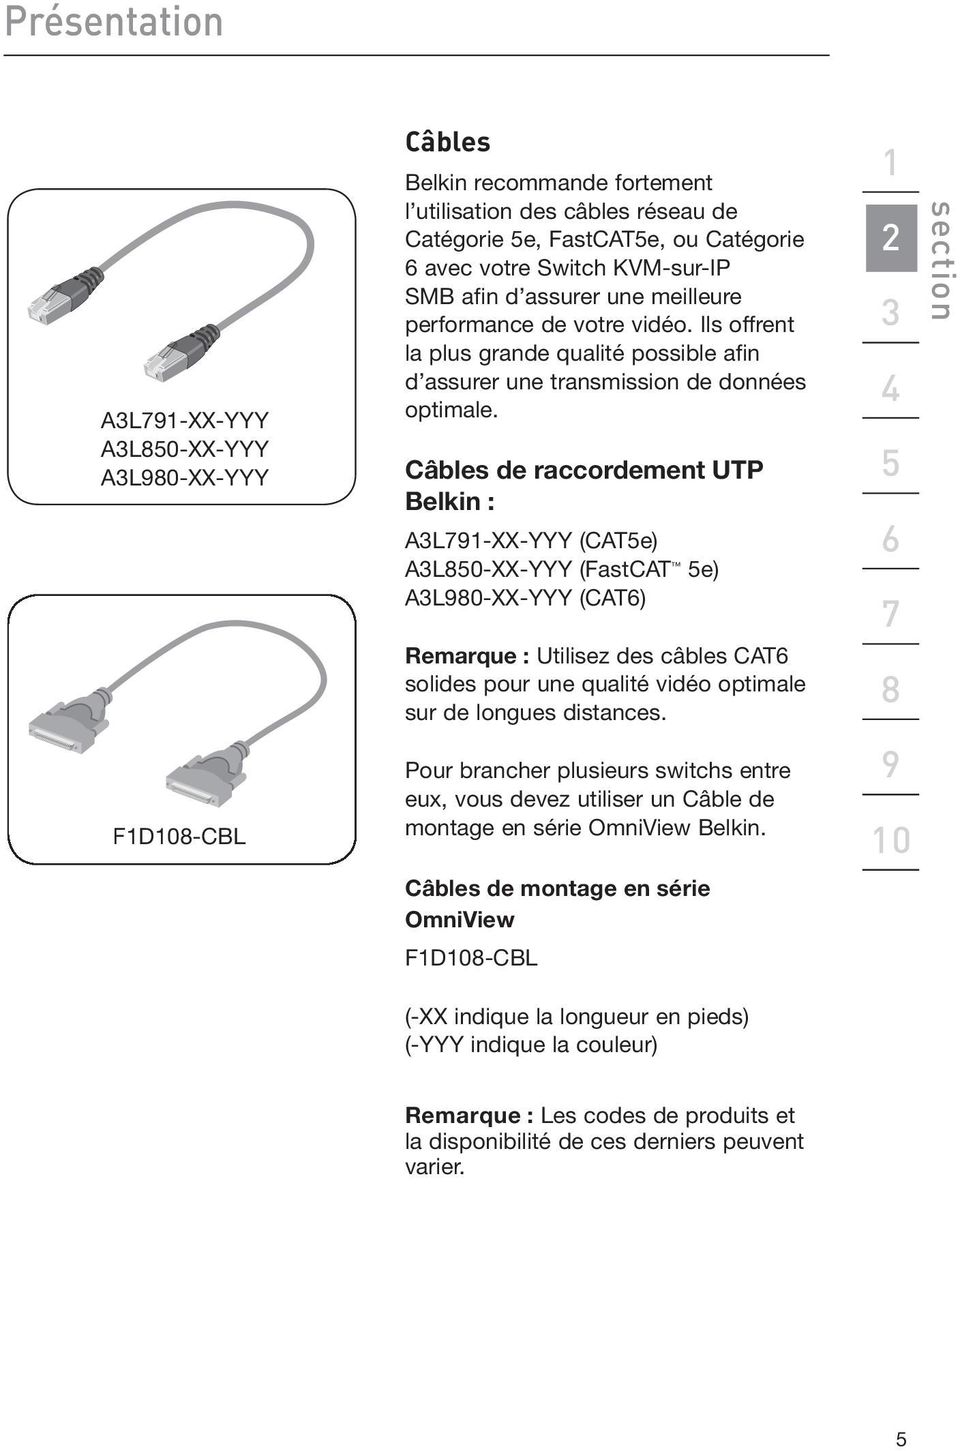 Câbles de raccordement UTP Belkin : A3L791-XX-YYY (CAT5e) A3L850-XX-YYY (FastCAT 5e) A3L980-XX-YYY (CAT6) Remarque : Utilisez des câbles CAT6 solides pour une qualité vidéo optimale sur de longues